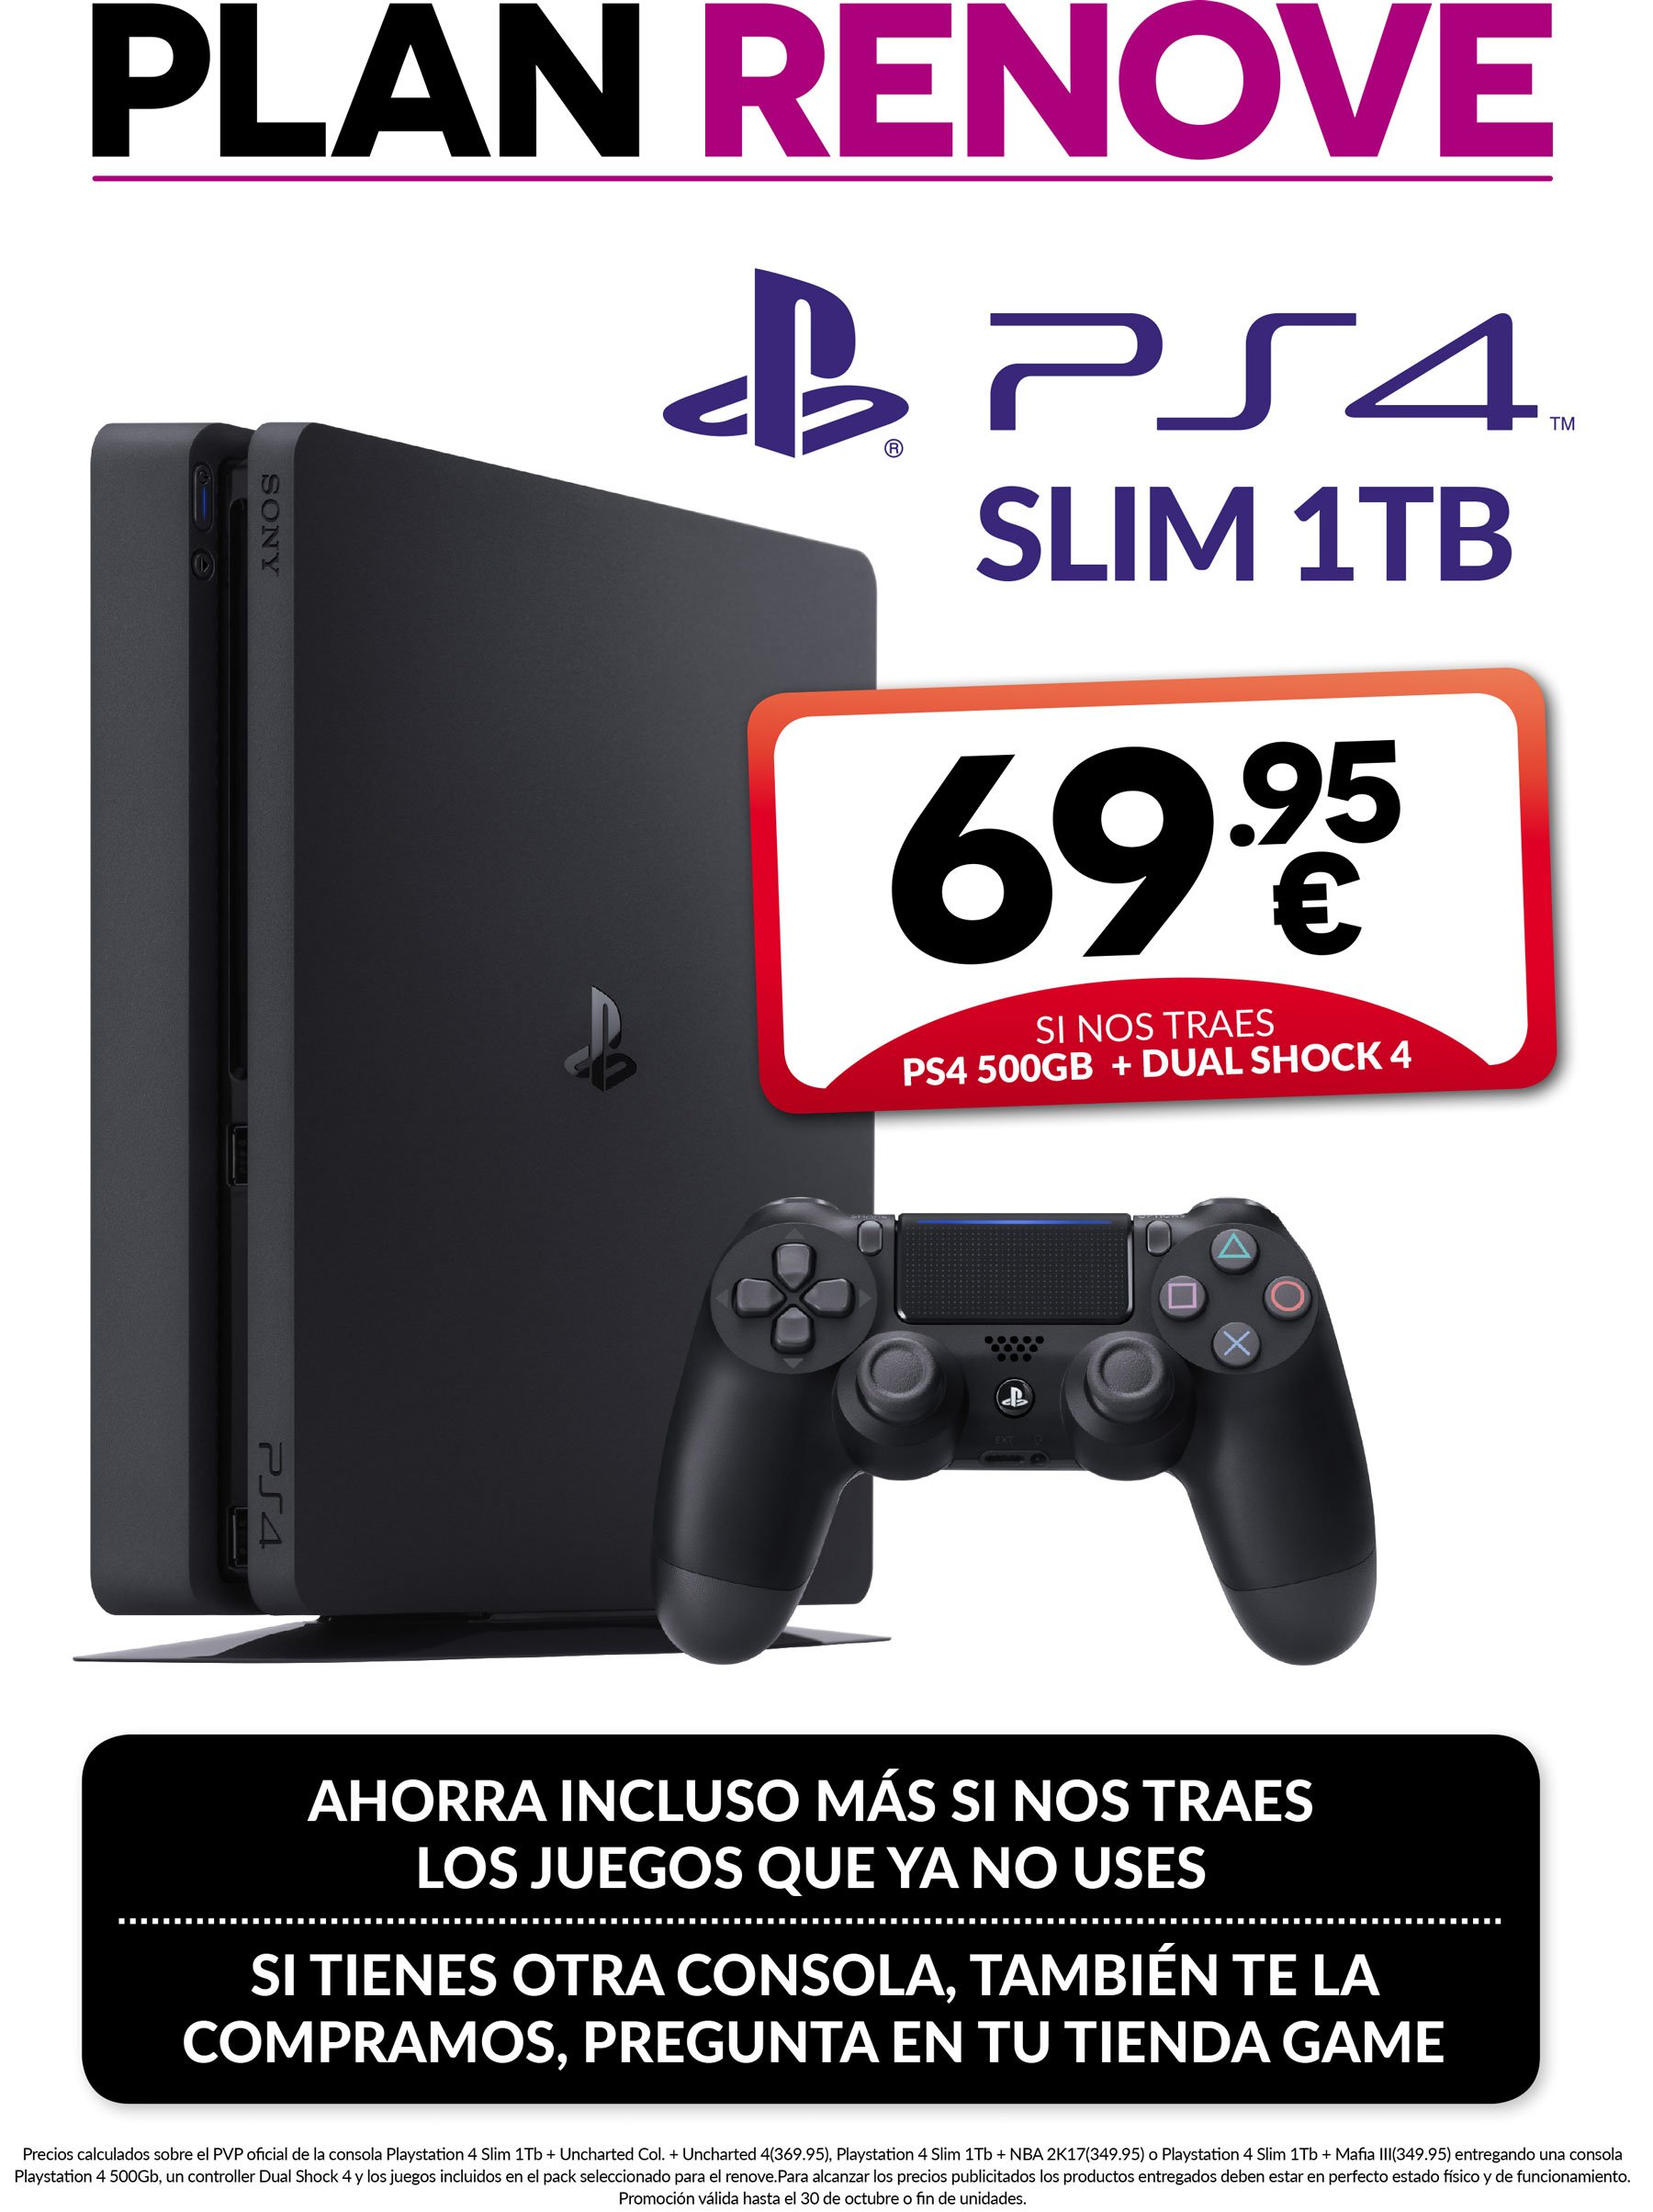 GAME España on Twitter: "¡PLAN RENOVE de PS4 Slim Corre a tu tienda habitual, que te esperas al último momento ya sabes lo pasa 😌 ¡Solo hasta el domingo!